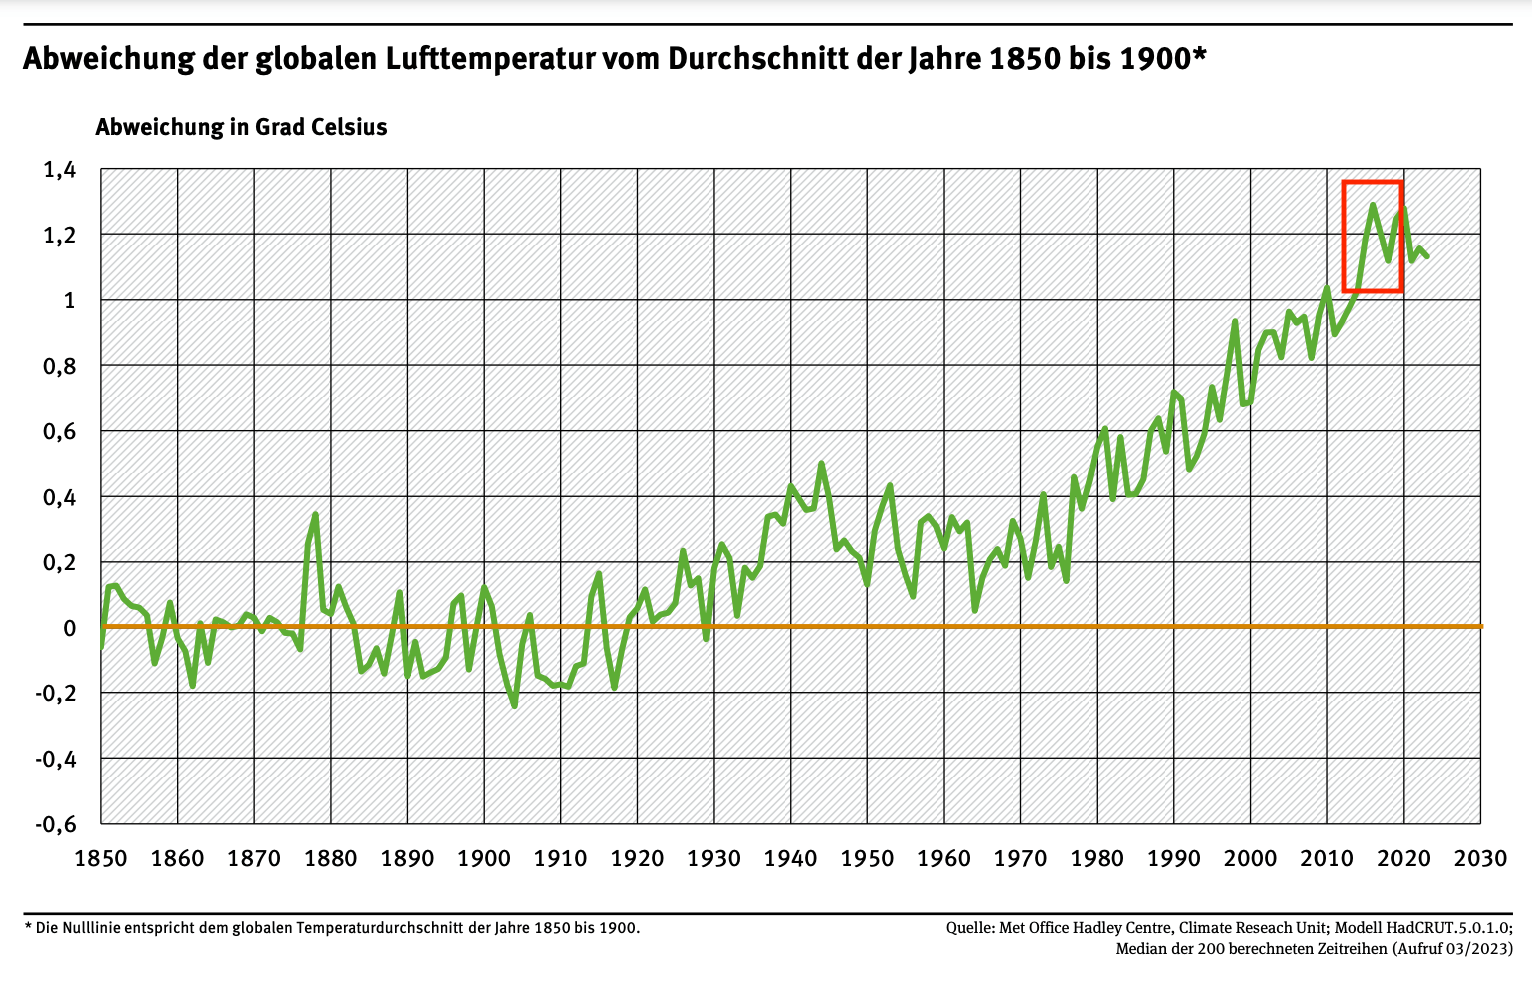 Die Abweichung der globalen Lufttemperatur vom Durchschnitt der Jahre 1850 bis 1900.